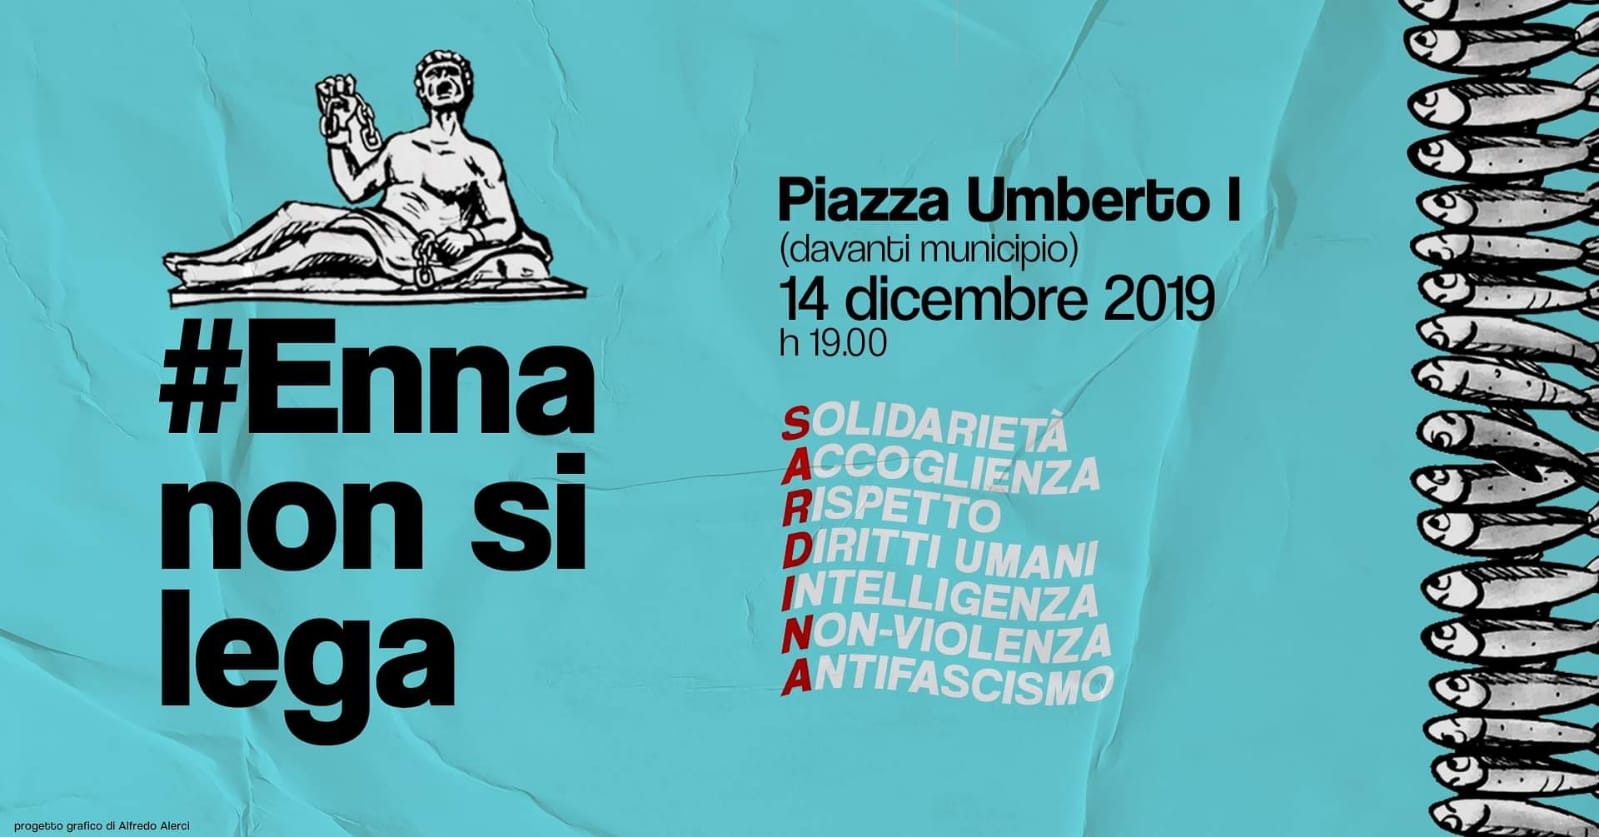 Domani manifestazione del movimento delle Sardine  in piazza Umberto I a Enna 0 (0)